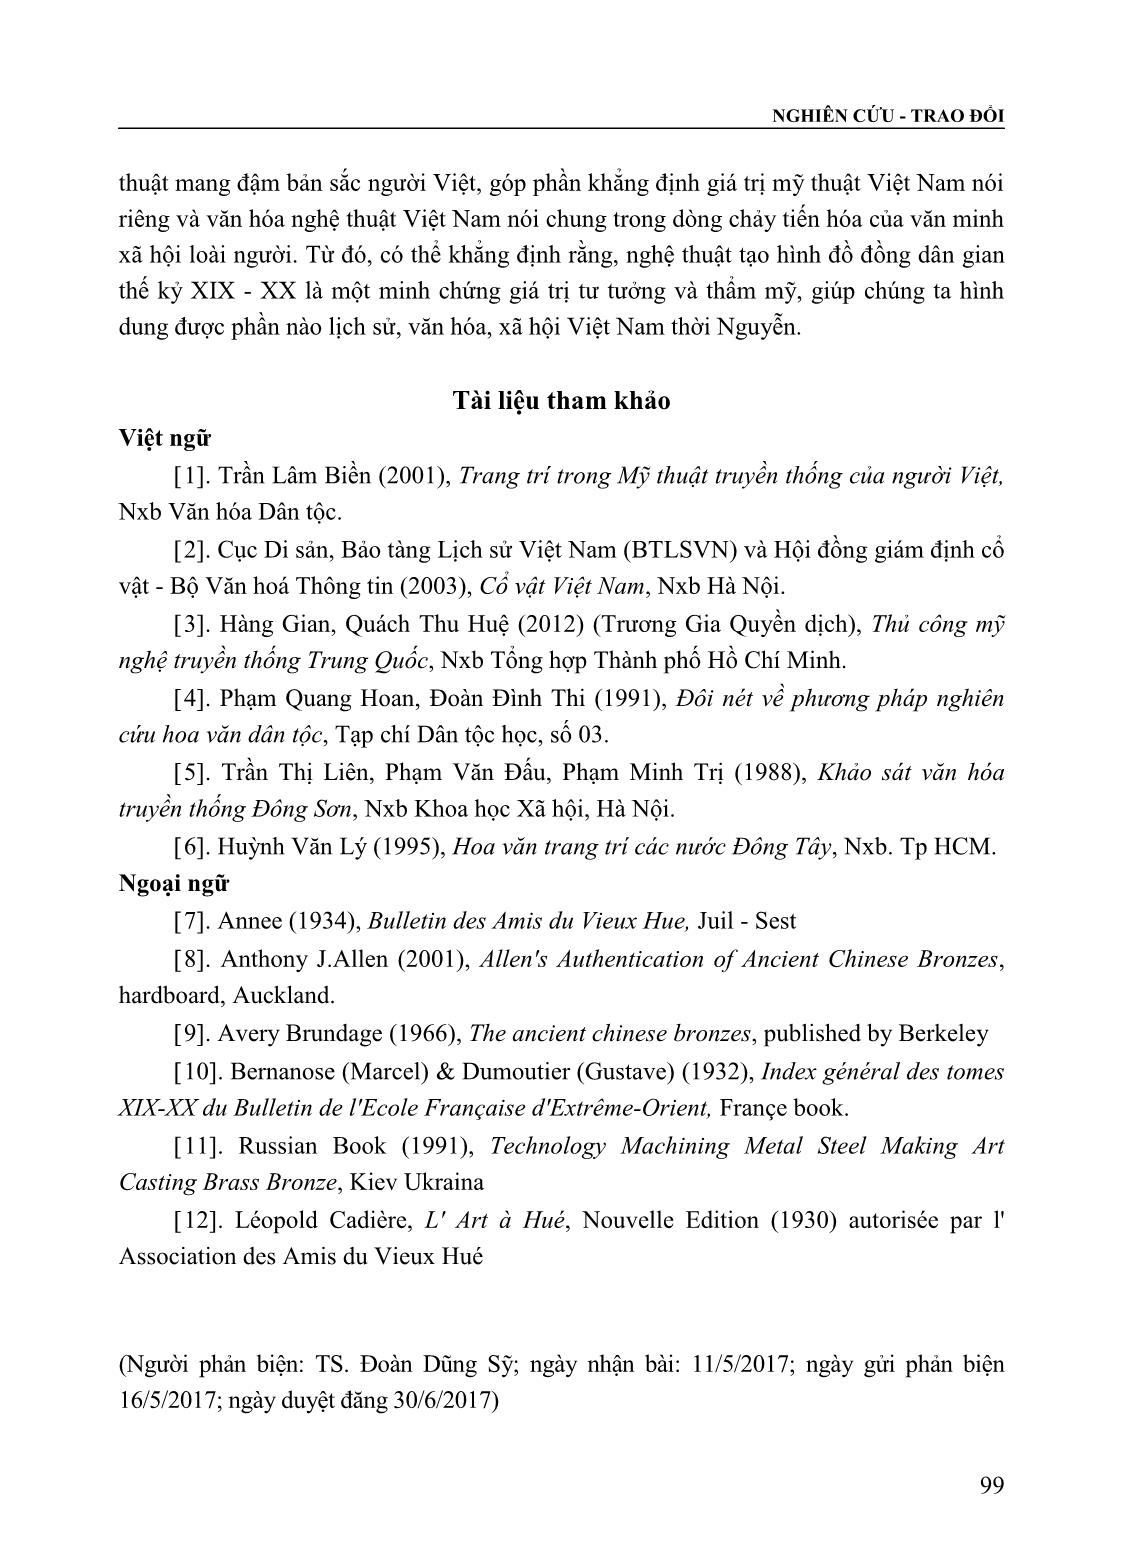 Tạo hình đồ đồng dân gian Việt Nam thời Nguyễn (Thế kỷ XIX - XX) trong bối cảnh giao lưu và tiếp biến với đồ đồng Trung Quốc trang 10